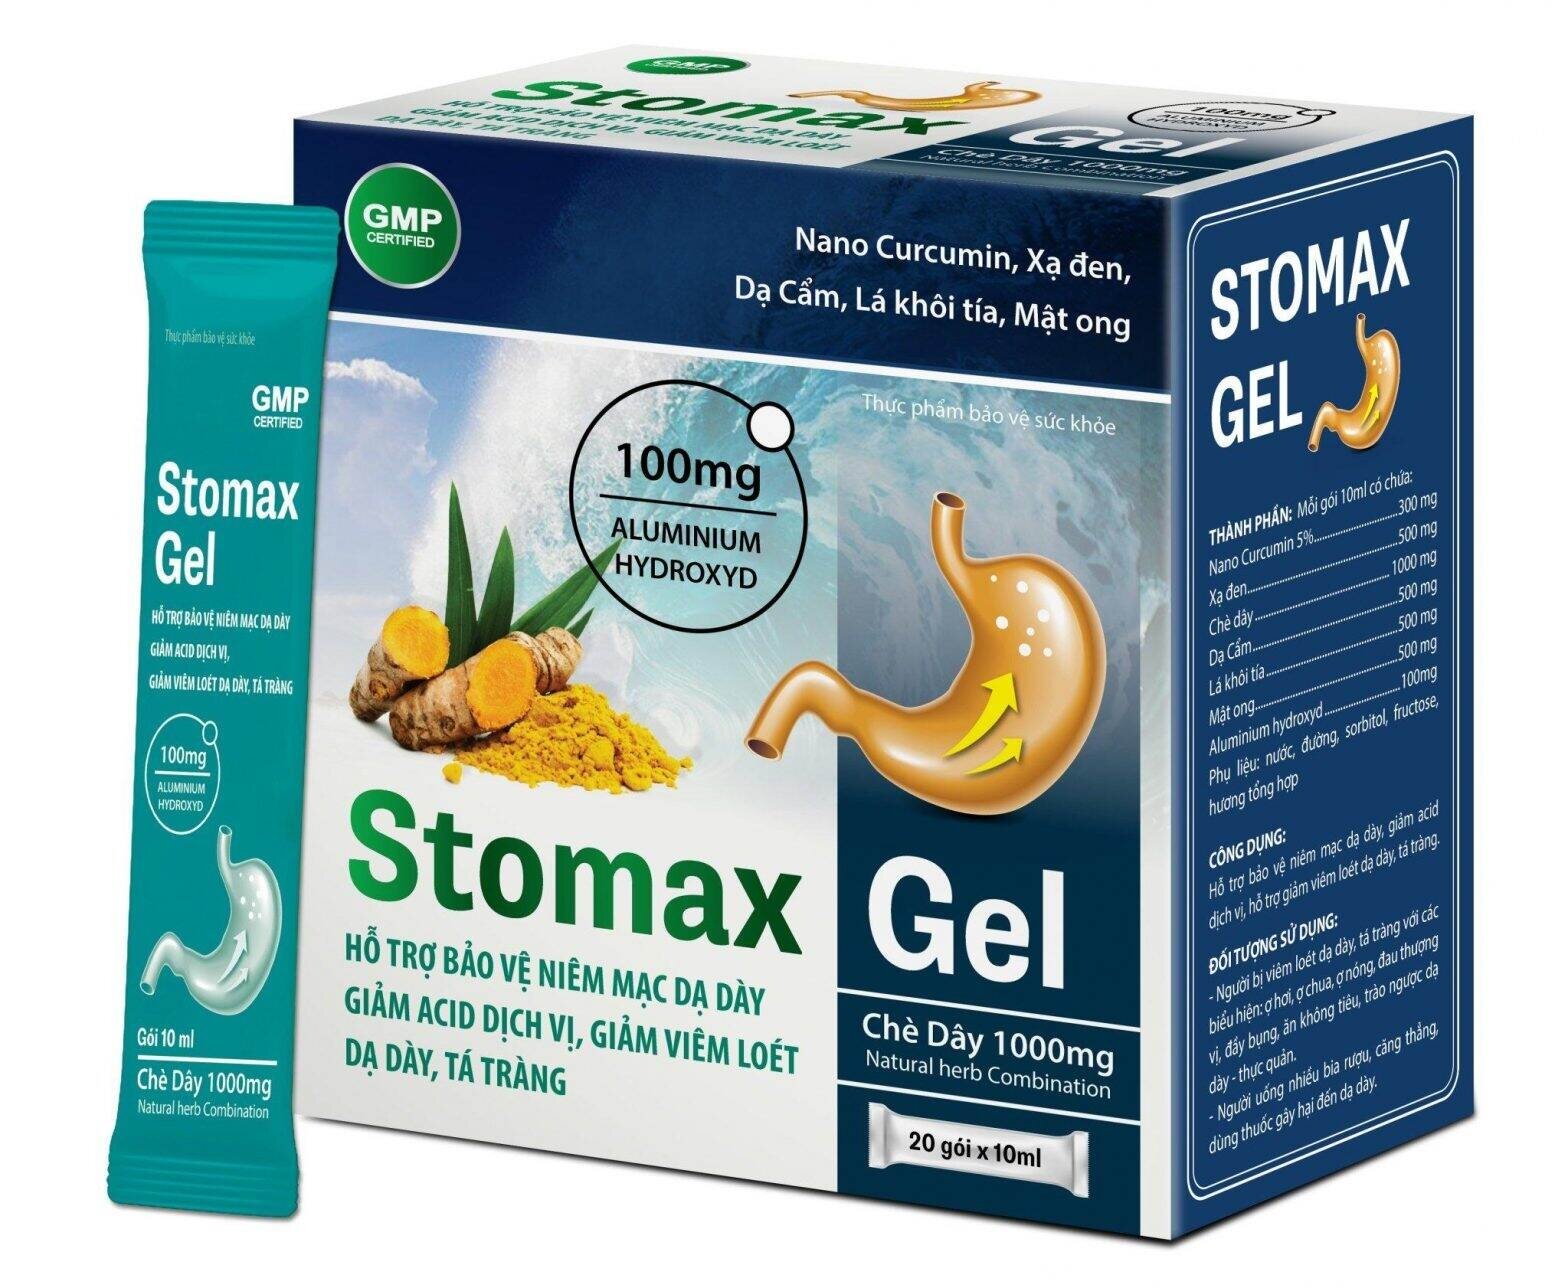 Stomax Gel - Hỗ trợ bảo vệ niêm mạc dạ dày, hỗ trợ giảm acid dịch vị